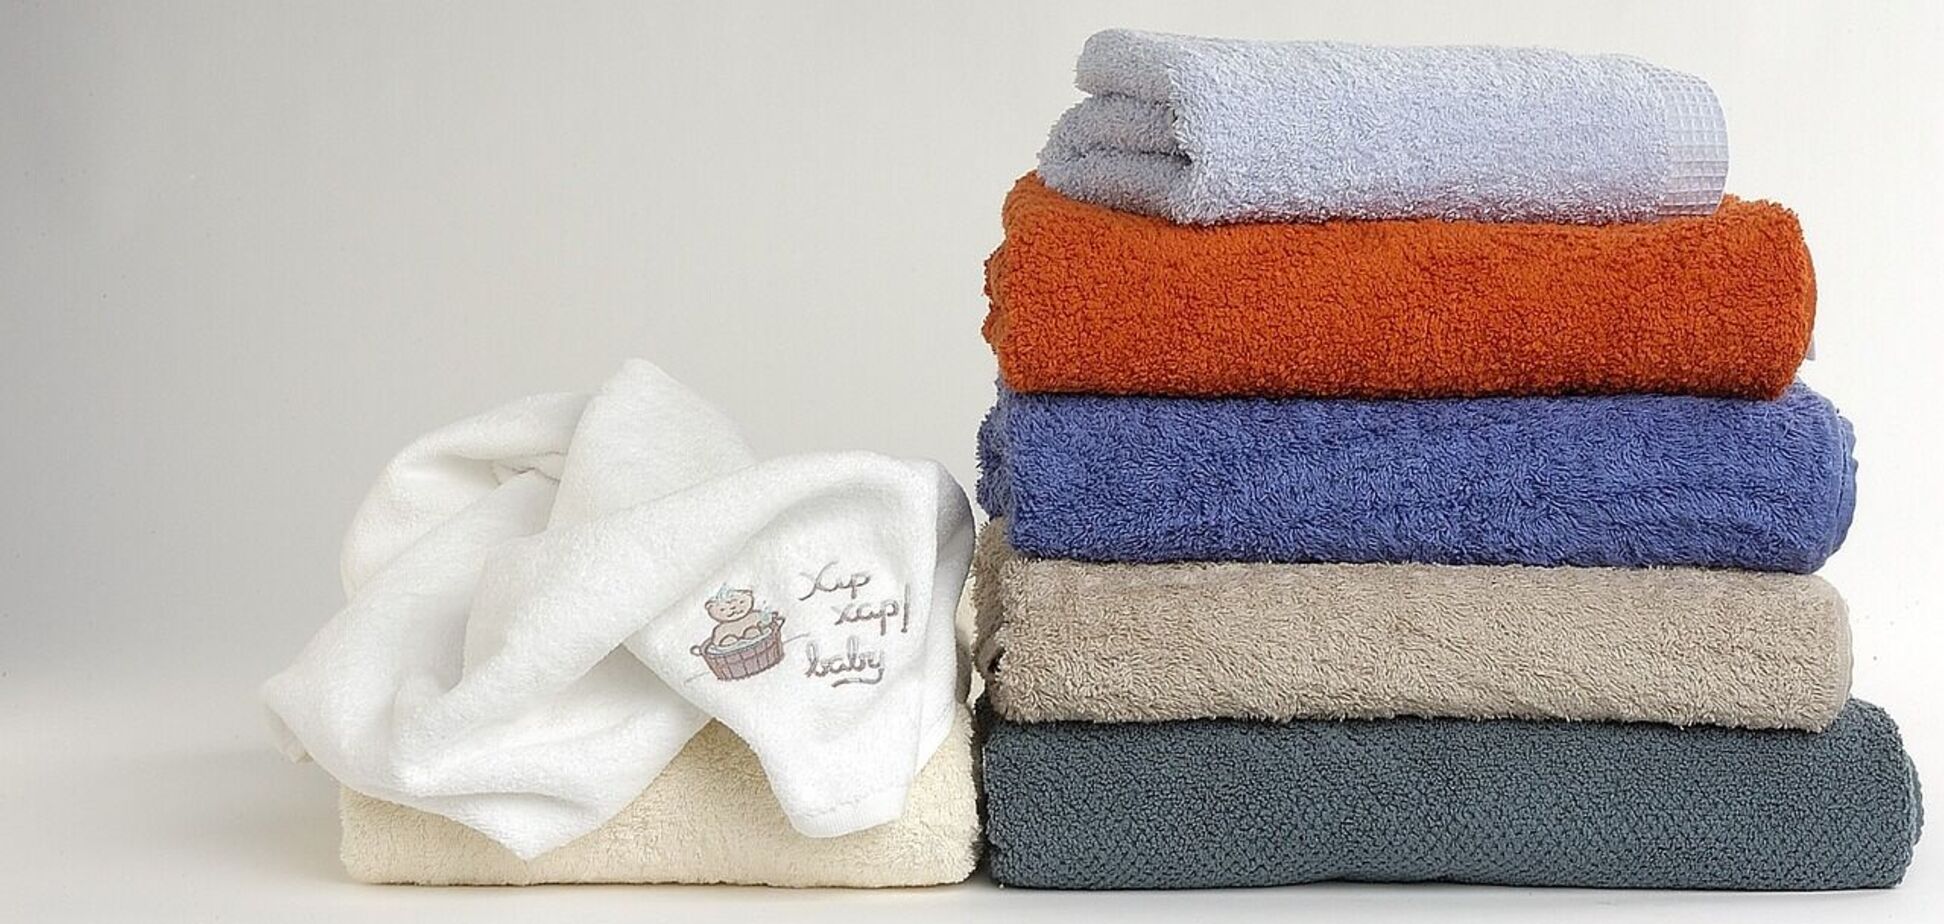 Как часто нужно стирать полотенца: почему это важно